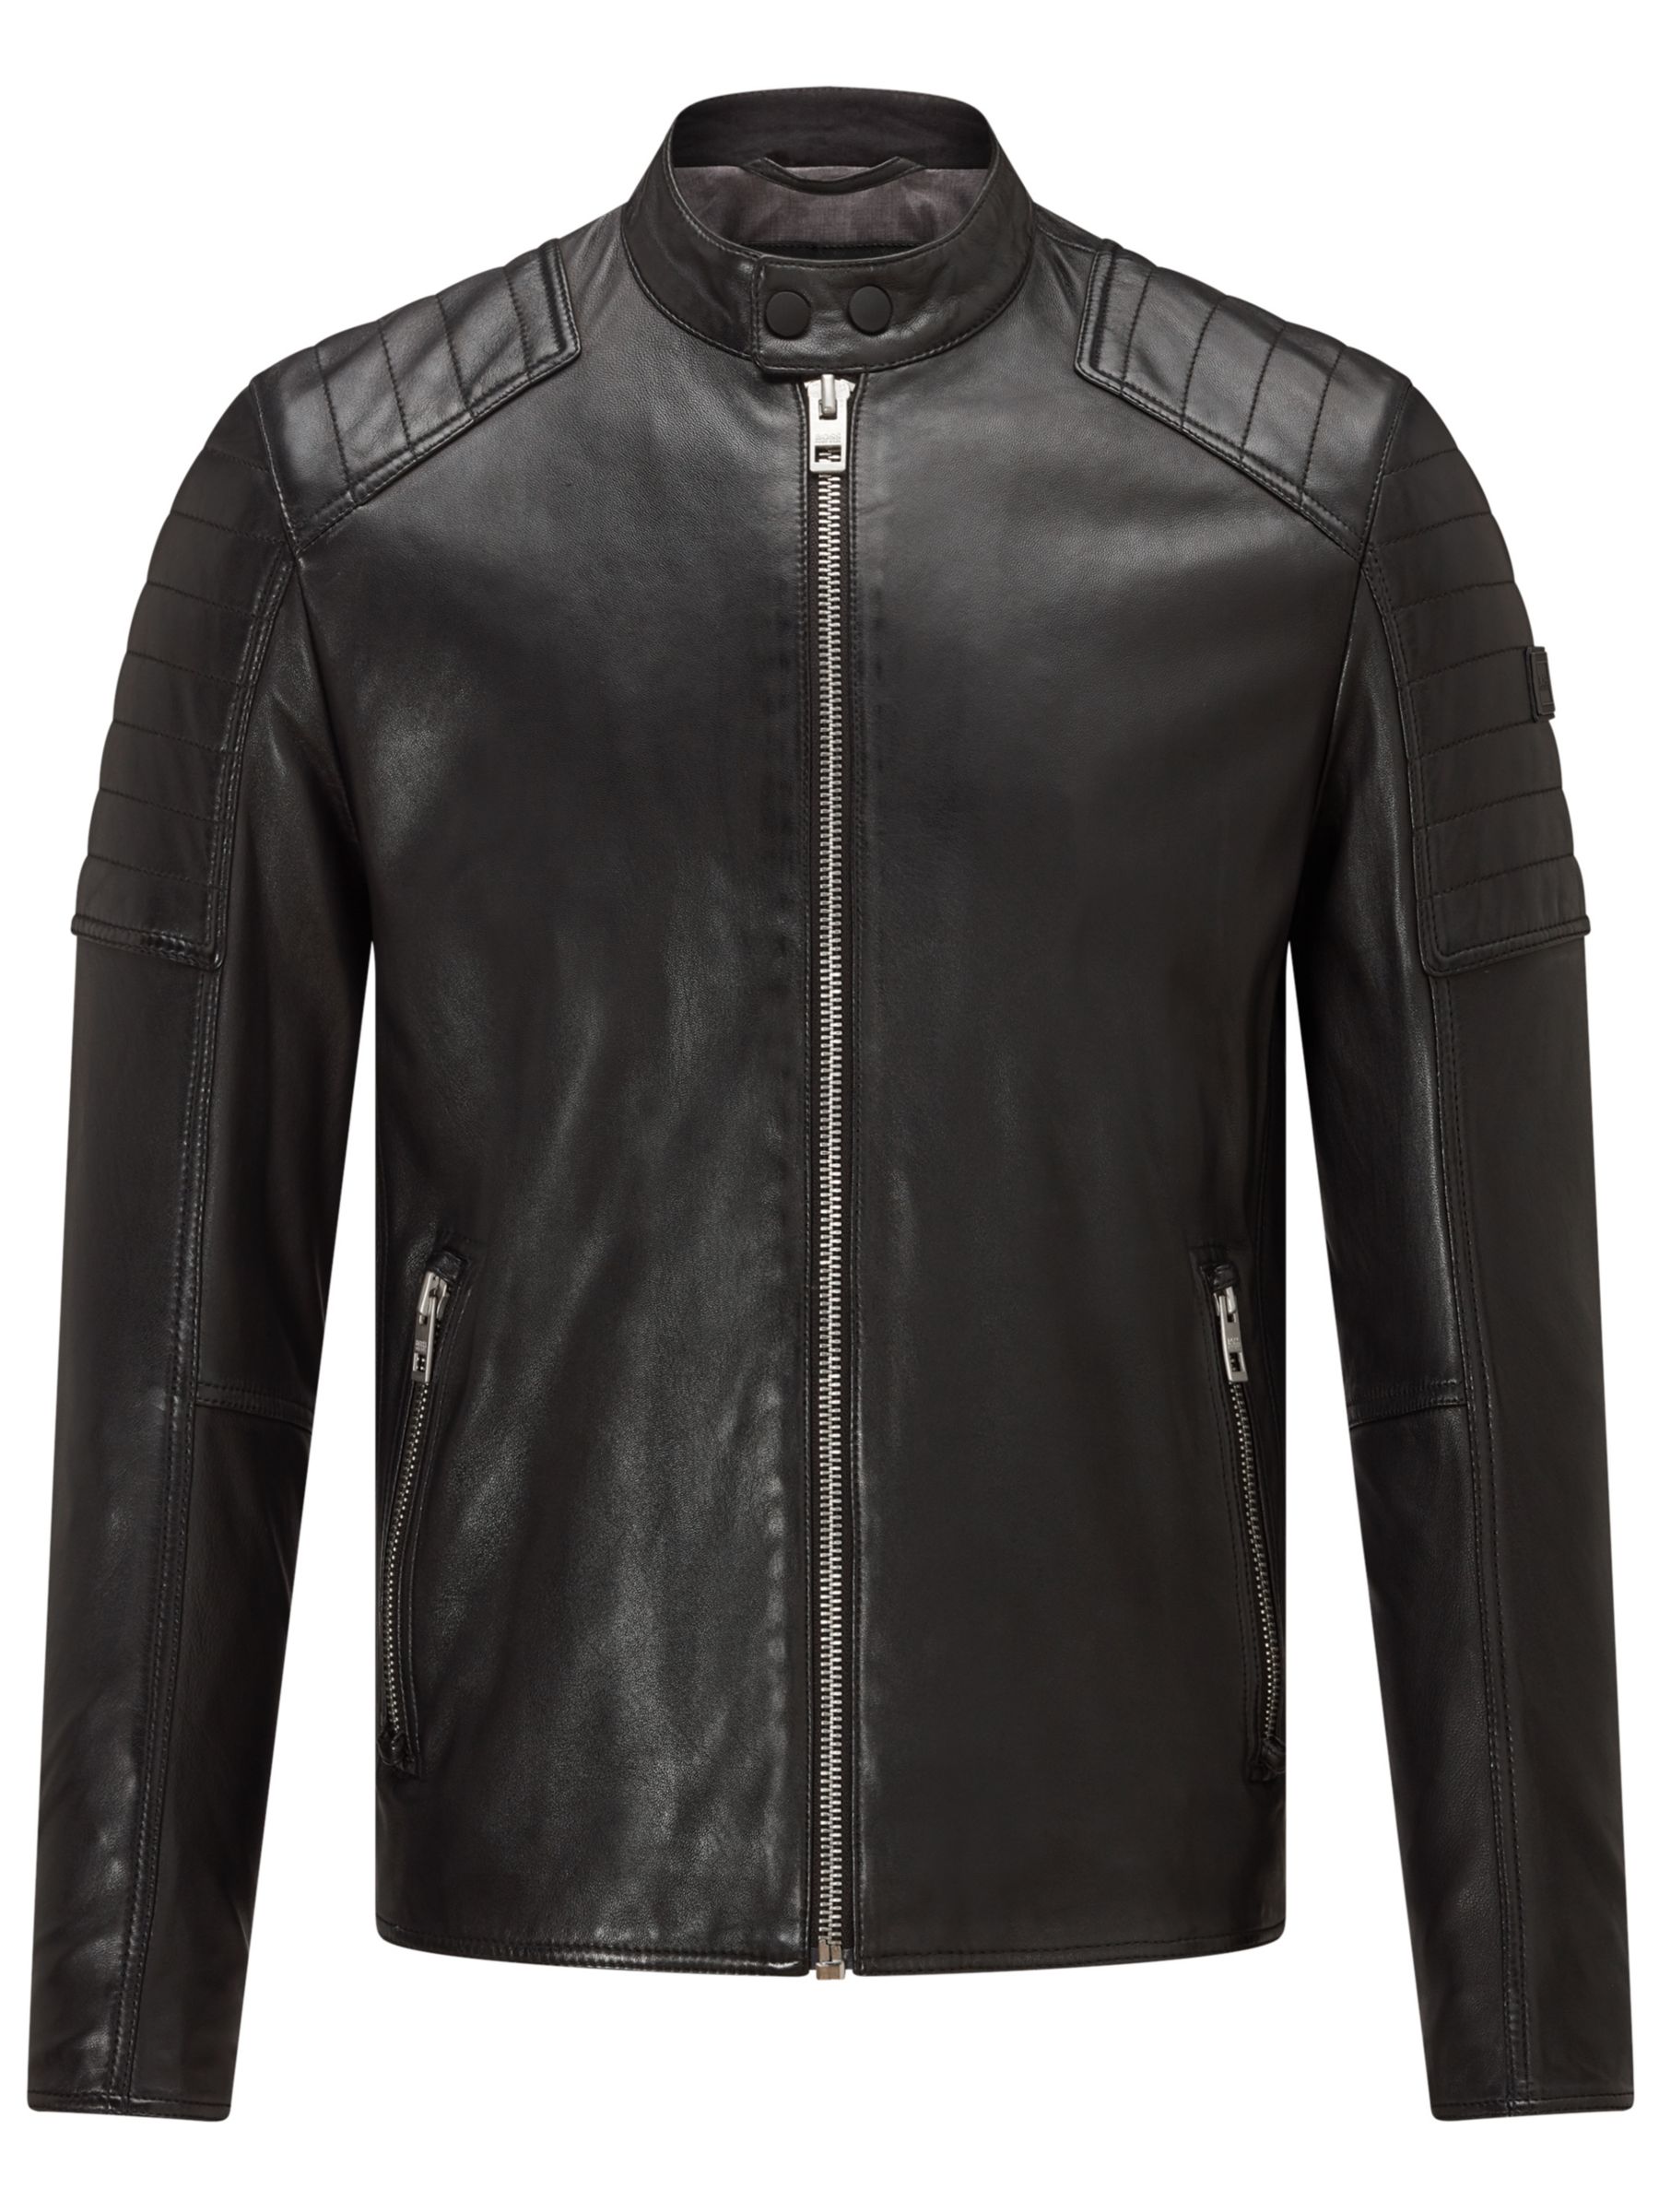 jaysee leather jacket